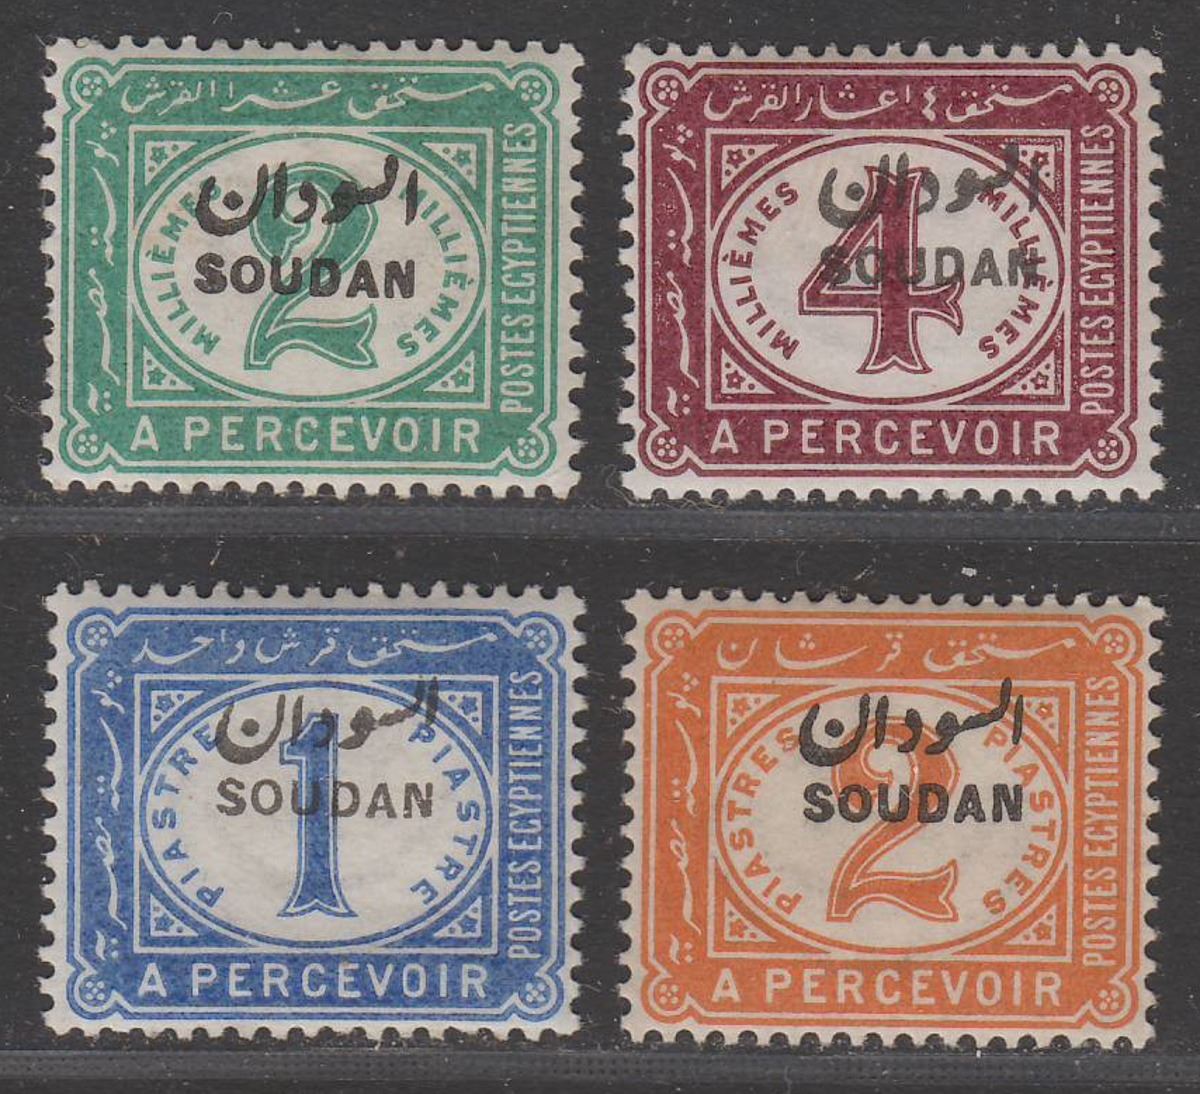 Sudan 1897 QV Postage Due Overprint Set Mint SG D1-D4 cat £21